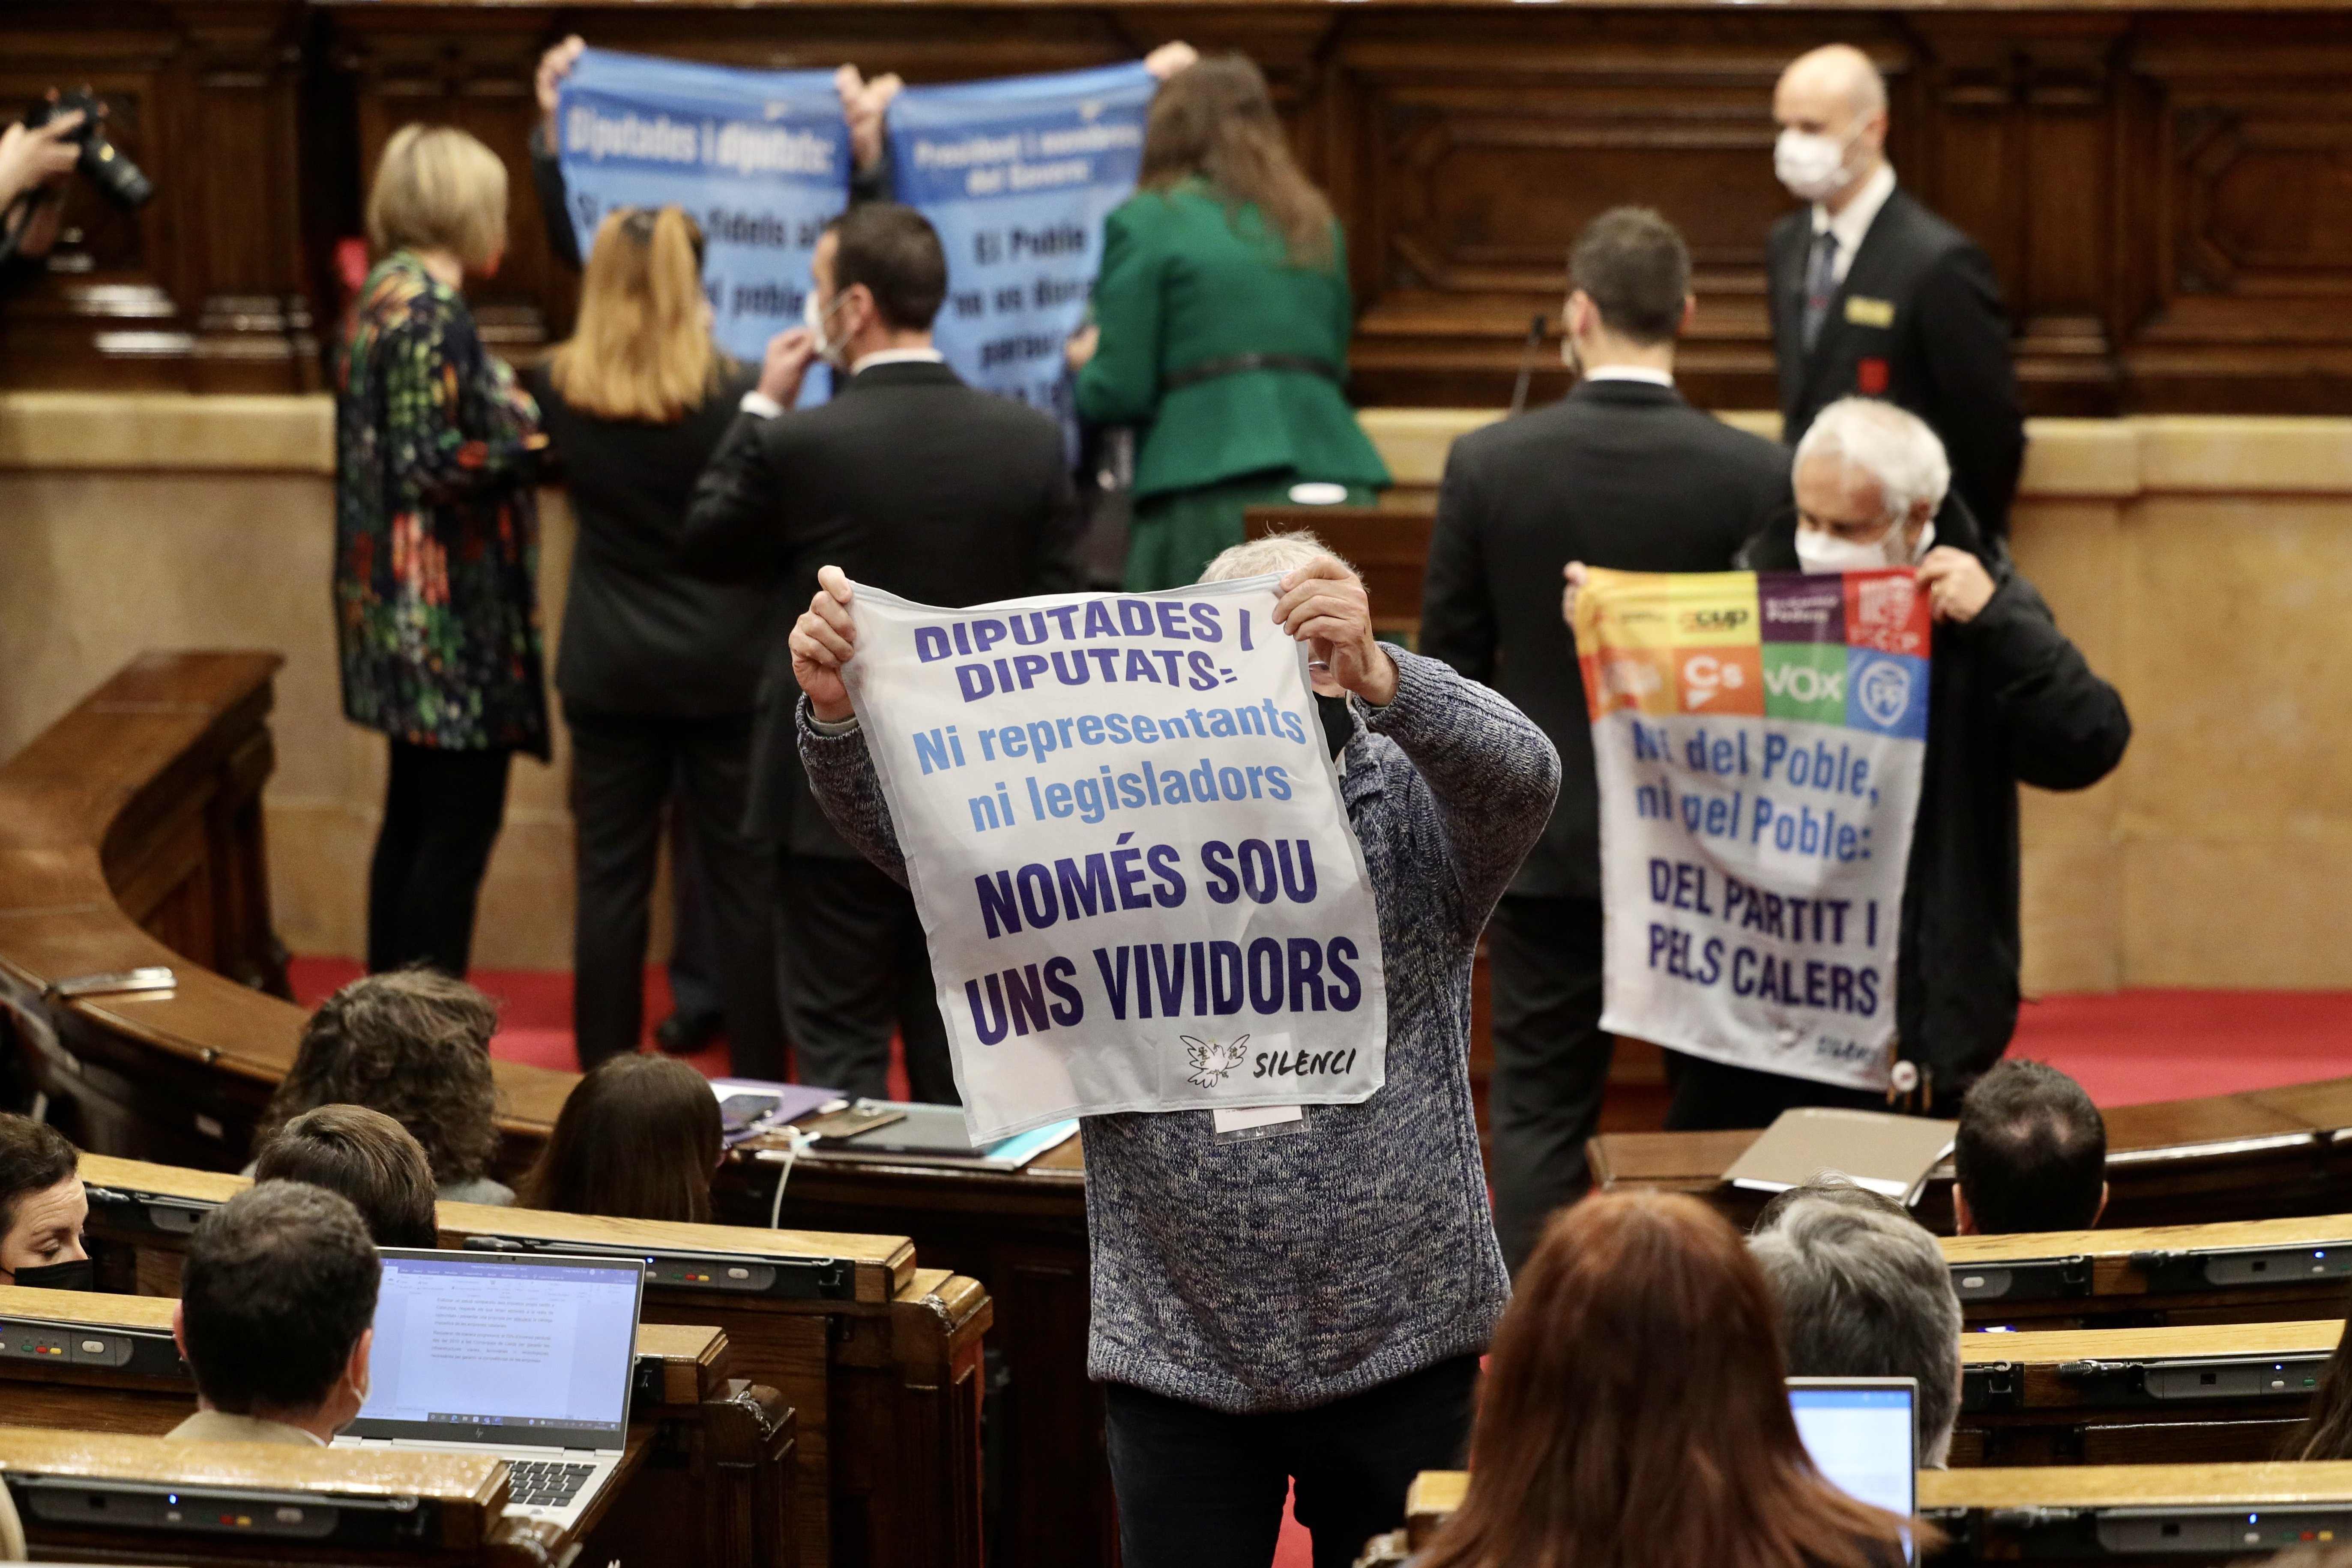 Activistes independentistes irrompen al Parlament: "Sou uns vividors"